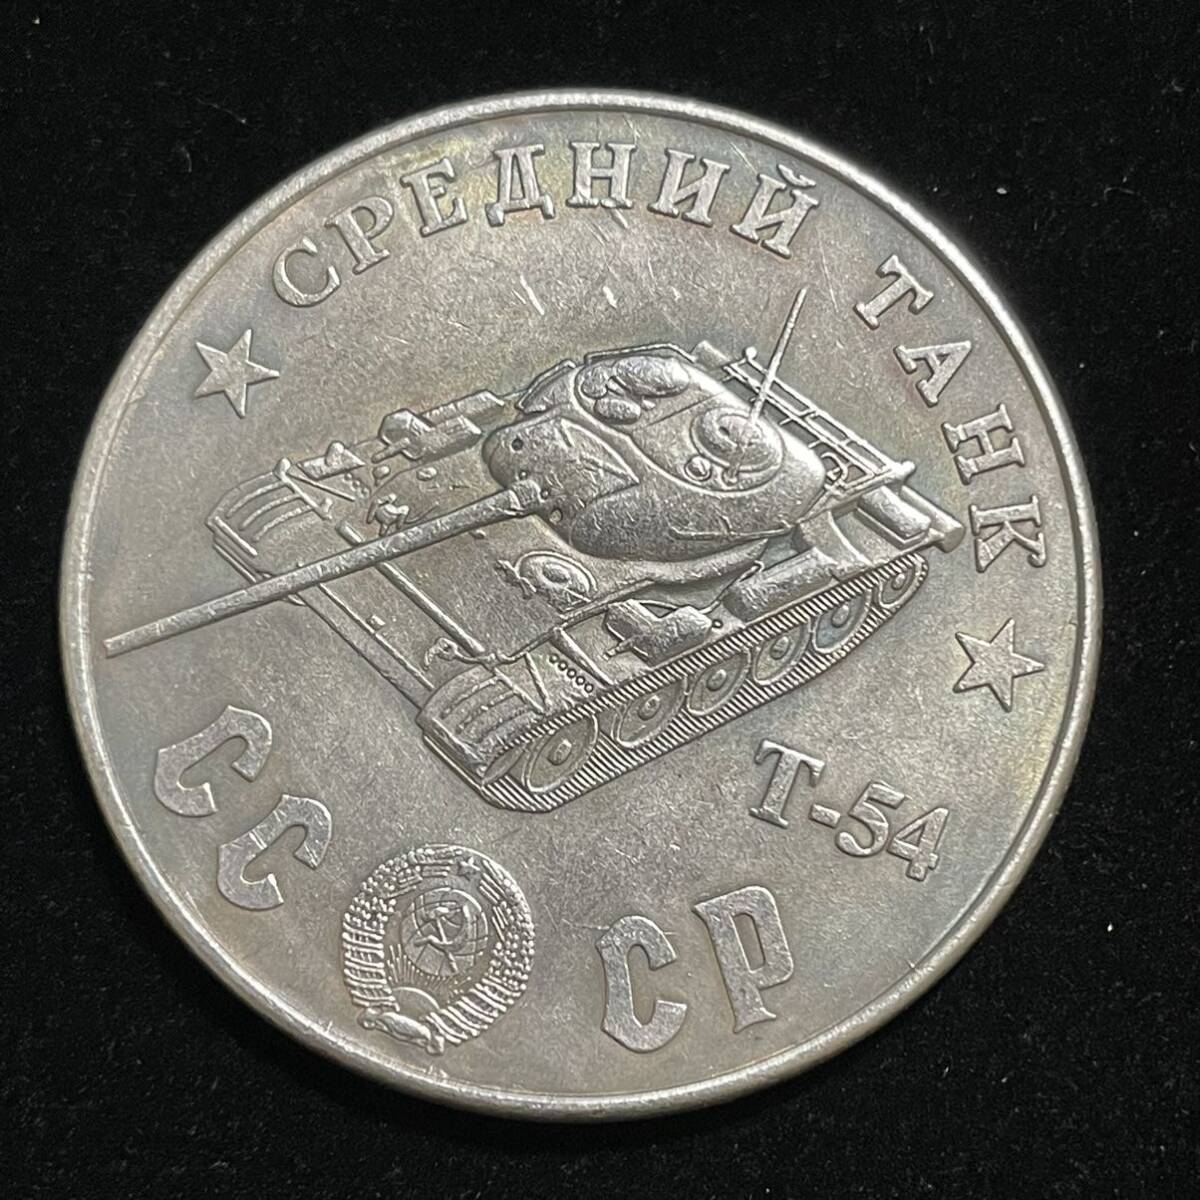 銀貨 硬貨 ロシア ソビエト連邦 戦車 記念幣 T-26 クレムリン宮殿 コレクション コイン 古銭 の画像1